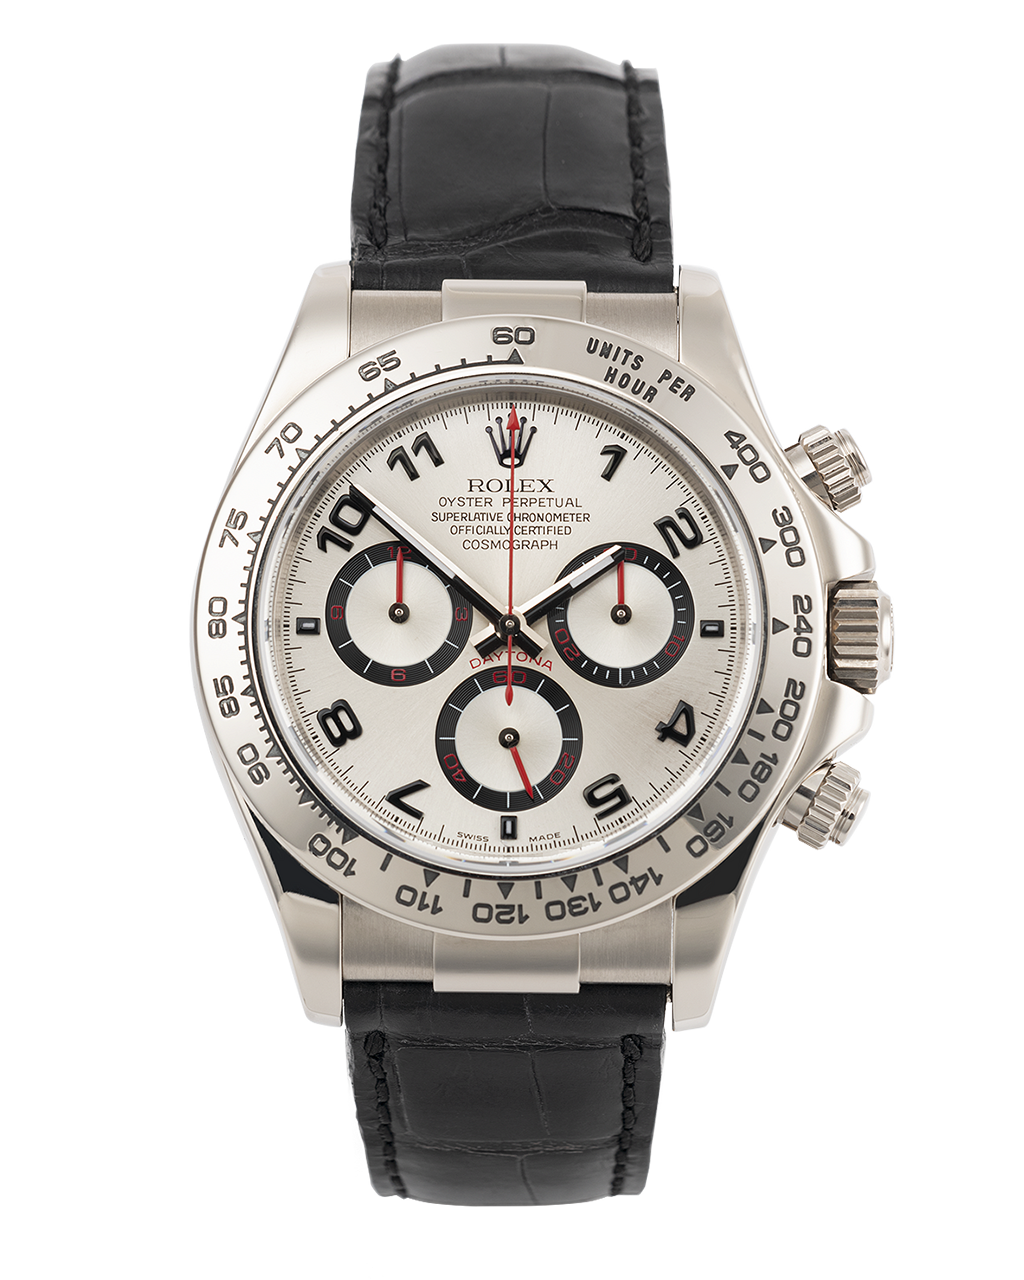 Rolex Cosmograph Daytona Watches | ref 116519 | 116519 - Rolex Warranty ...